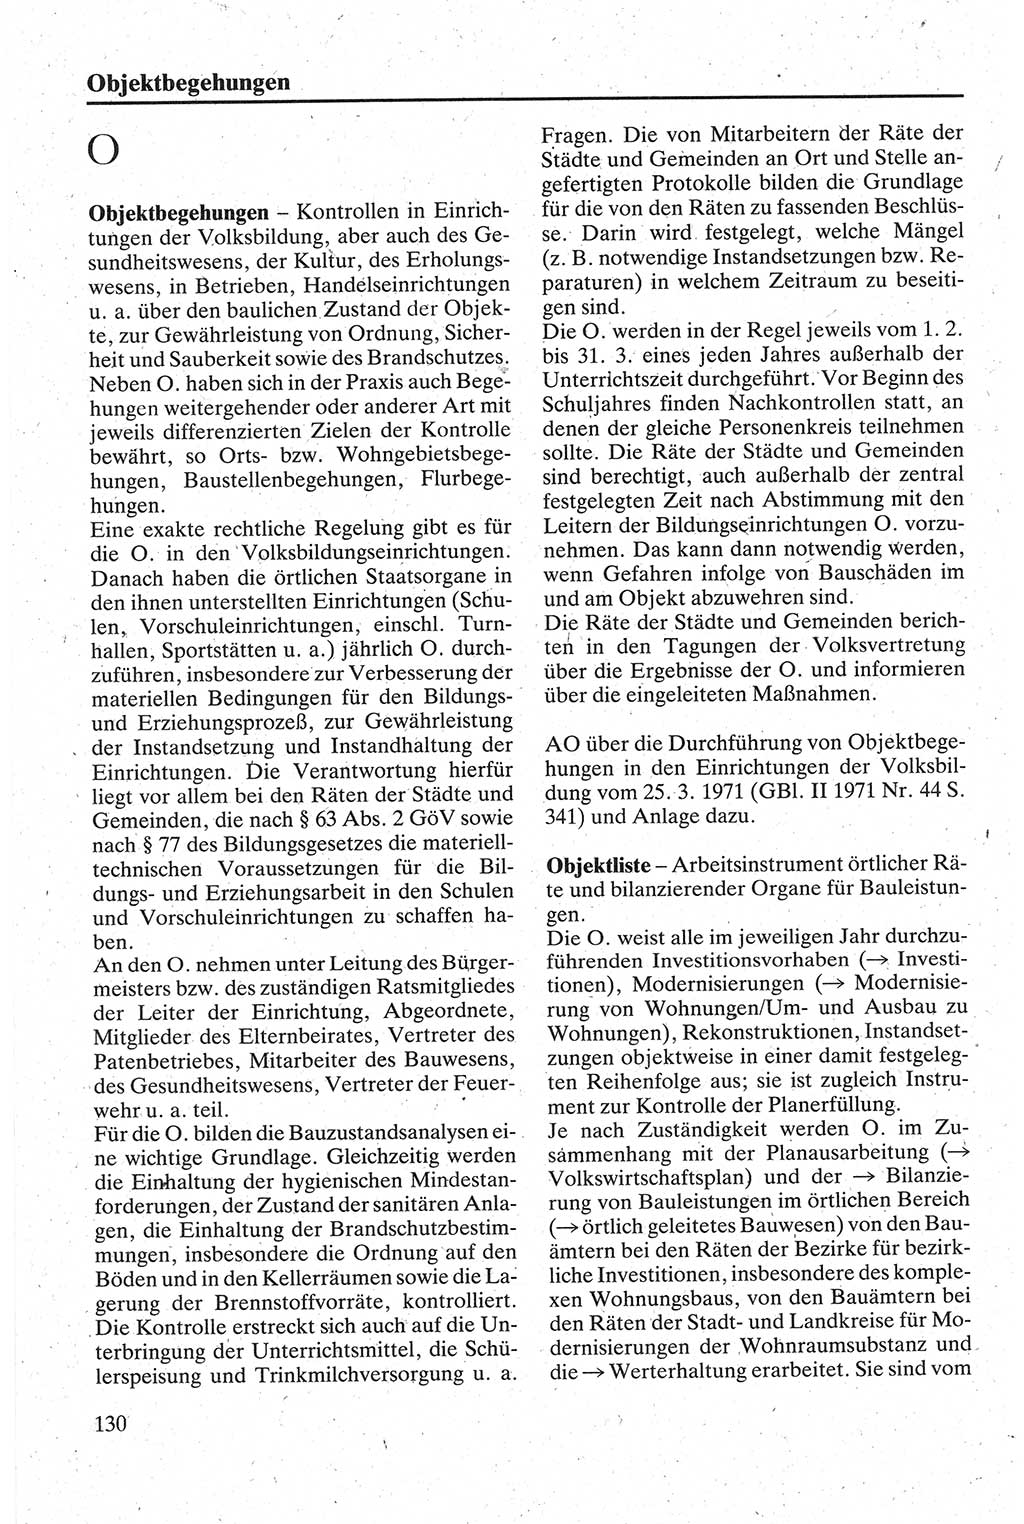 Handbuch für den Abgeordneten [Deutsche Demokratische Republik (DDR)] 1984, Seite 130 (Hb. Abg. DDR 1984, S. 130)